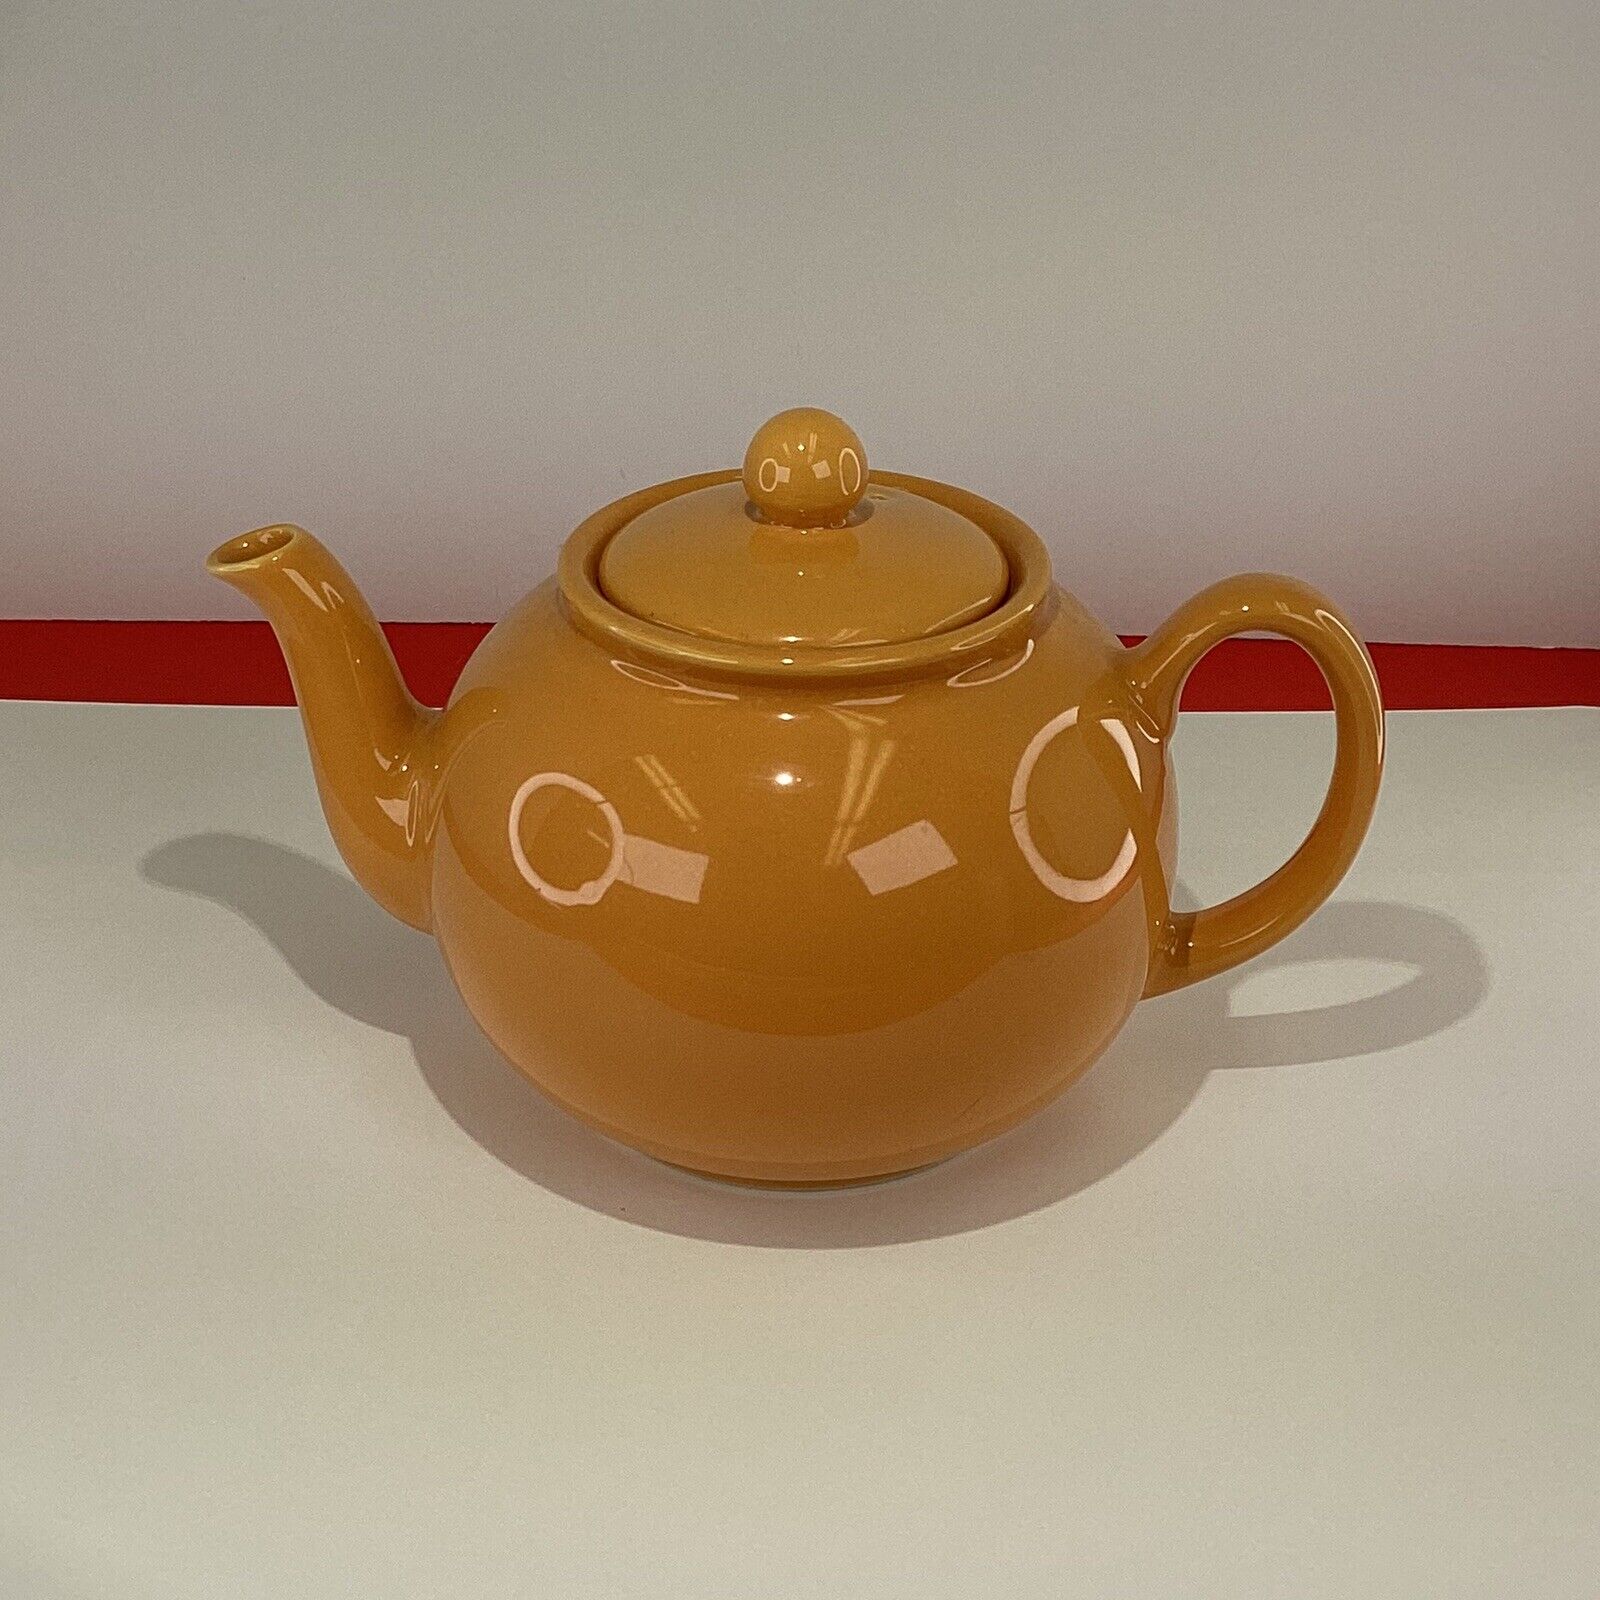 Bright orange “PRISTINE” Brand England tea pot